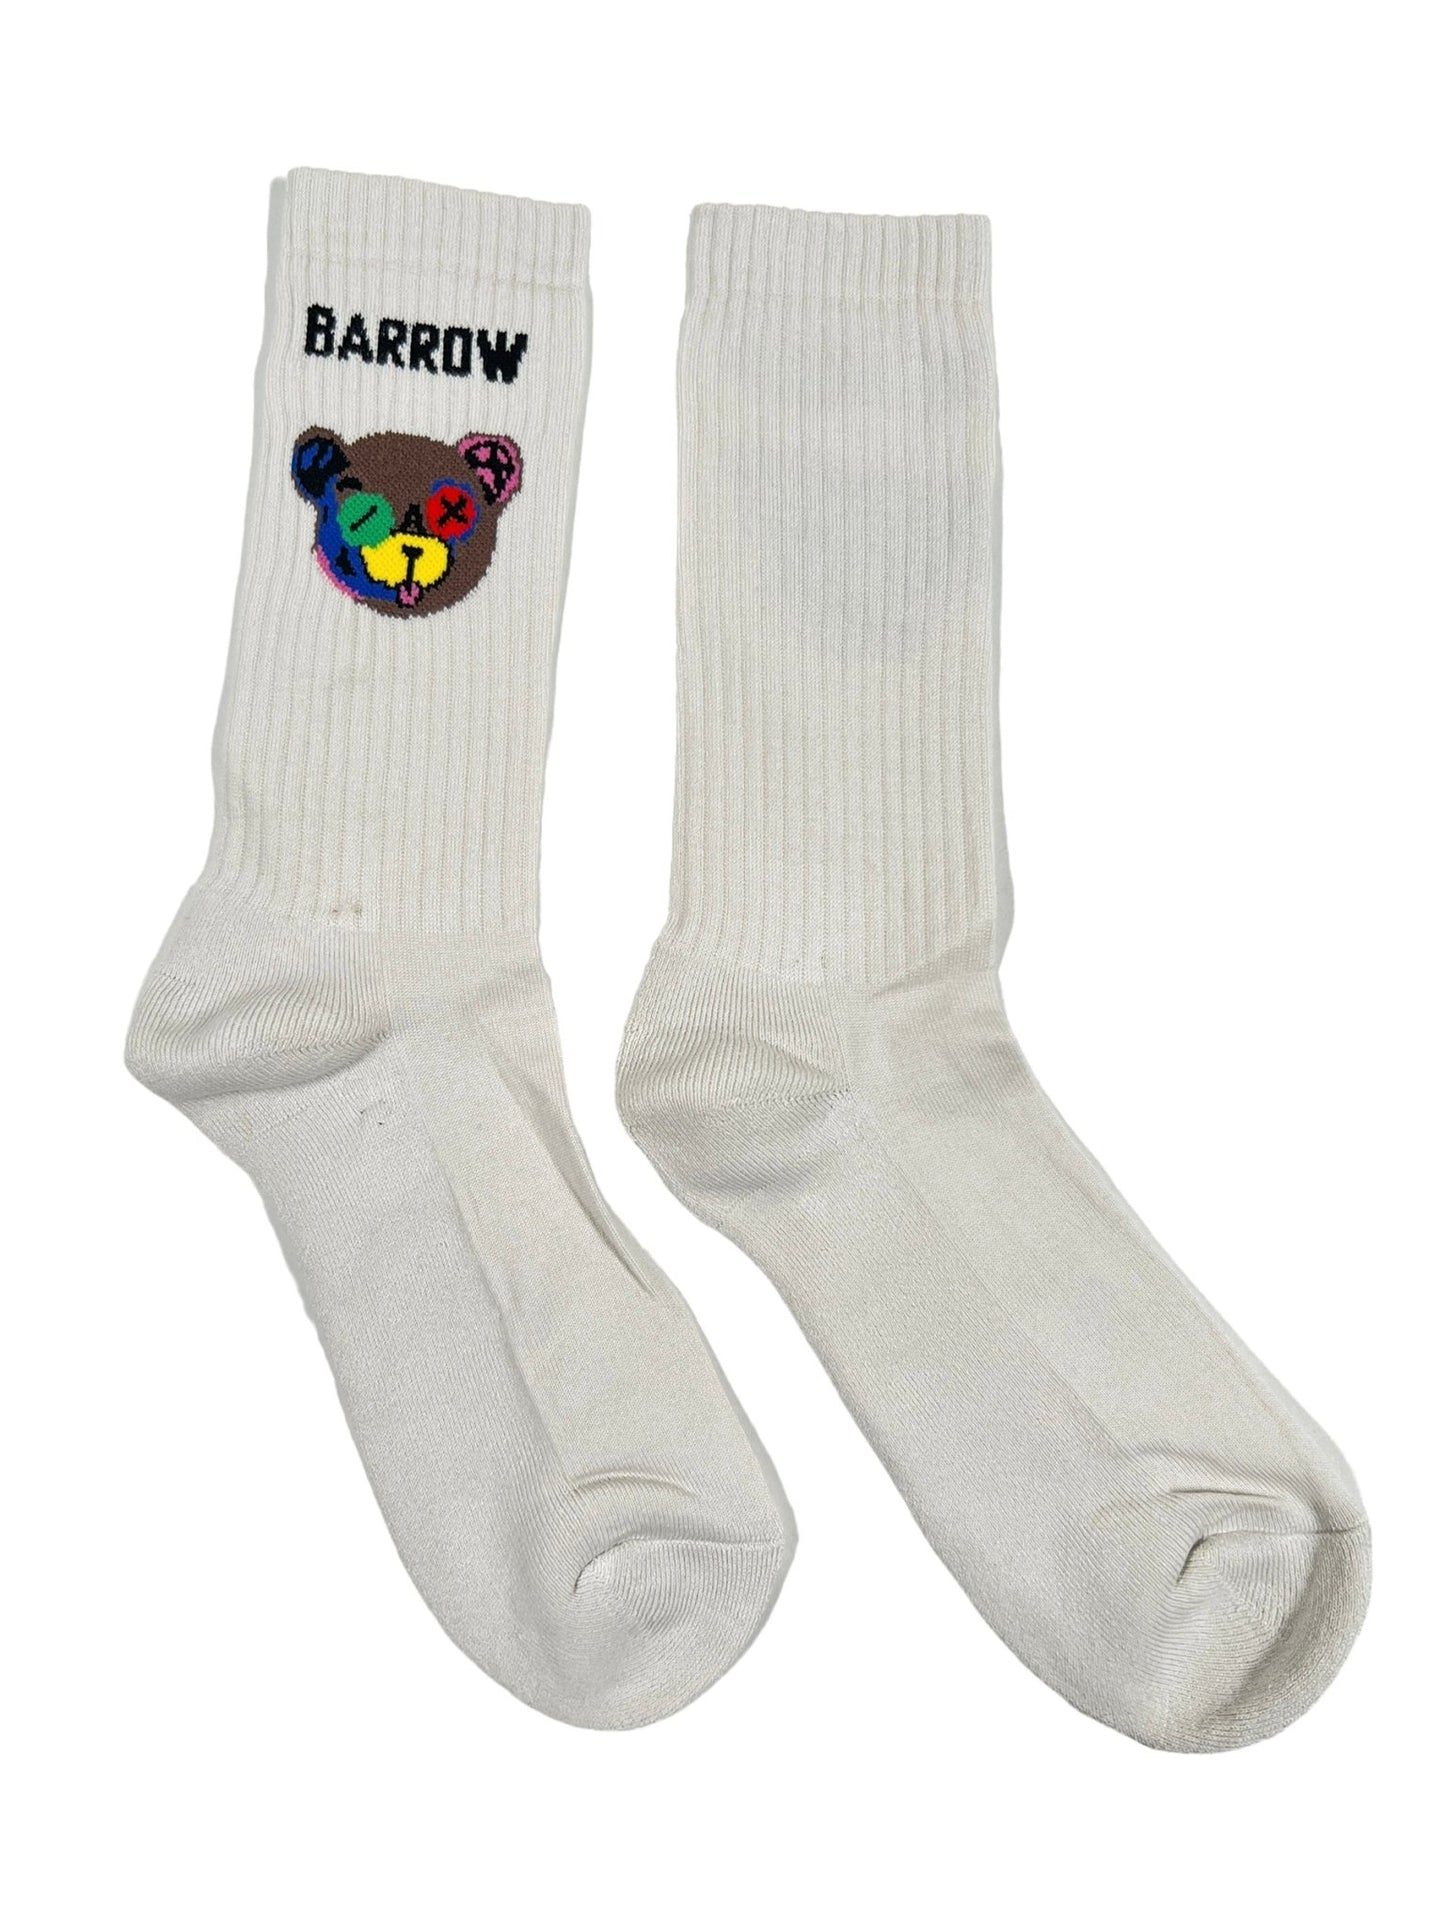 BARROW S4BWUASO026 SOCKS UNISEX